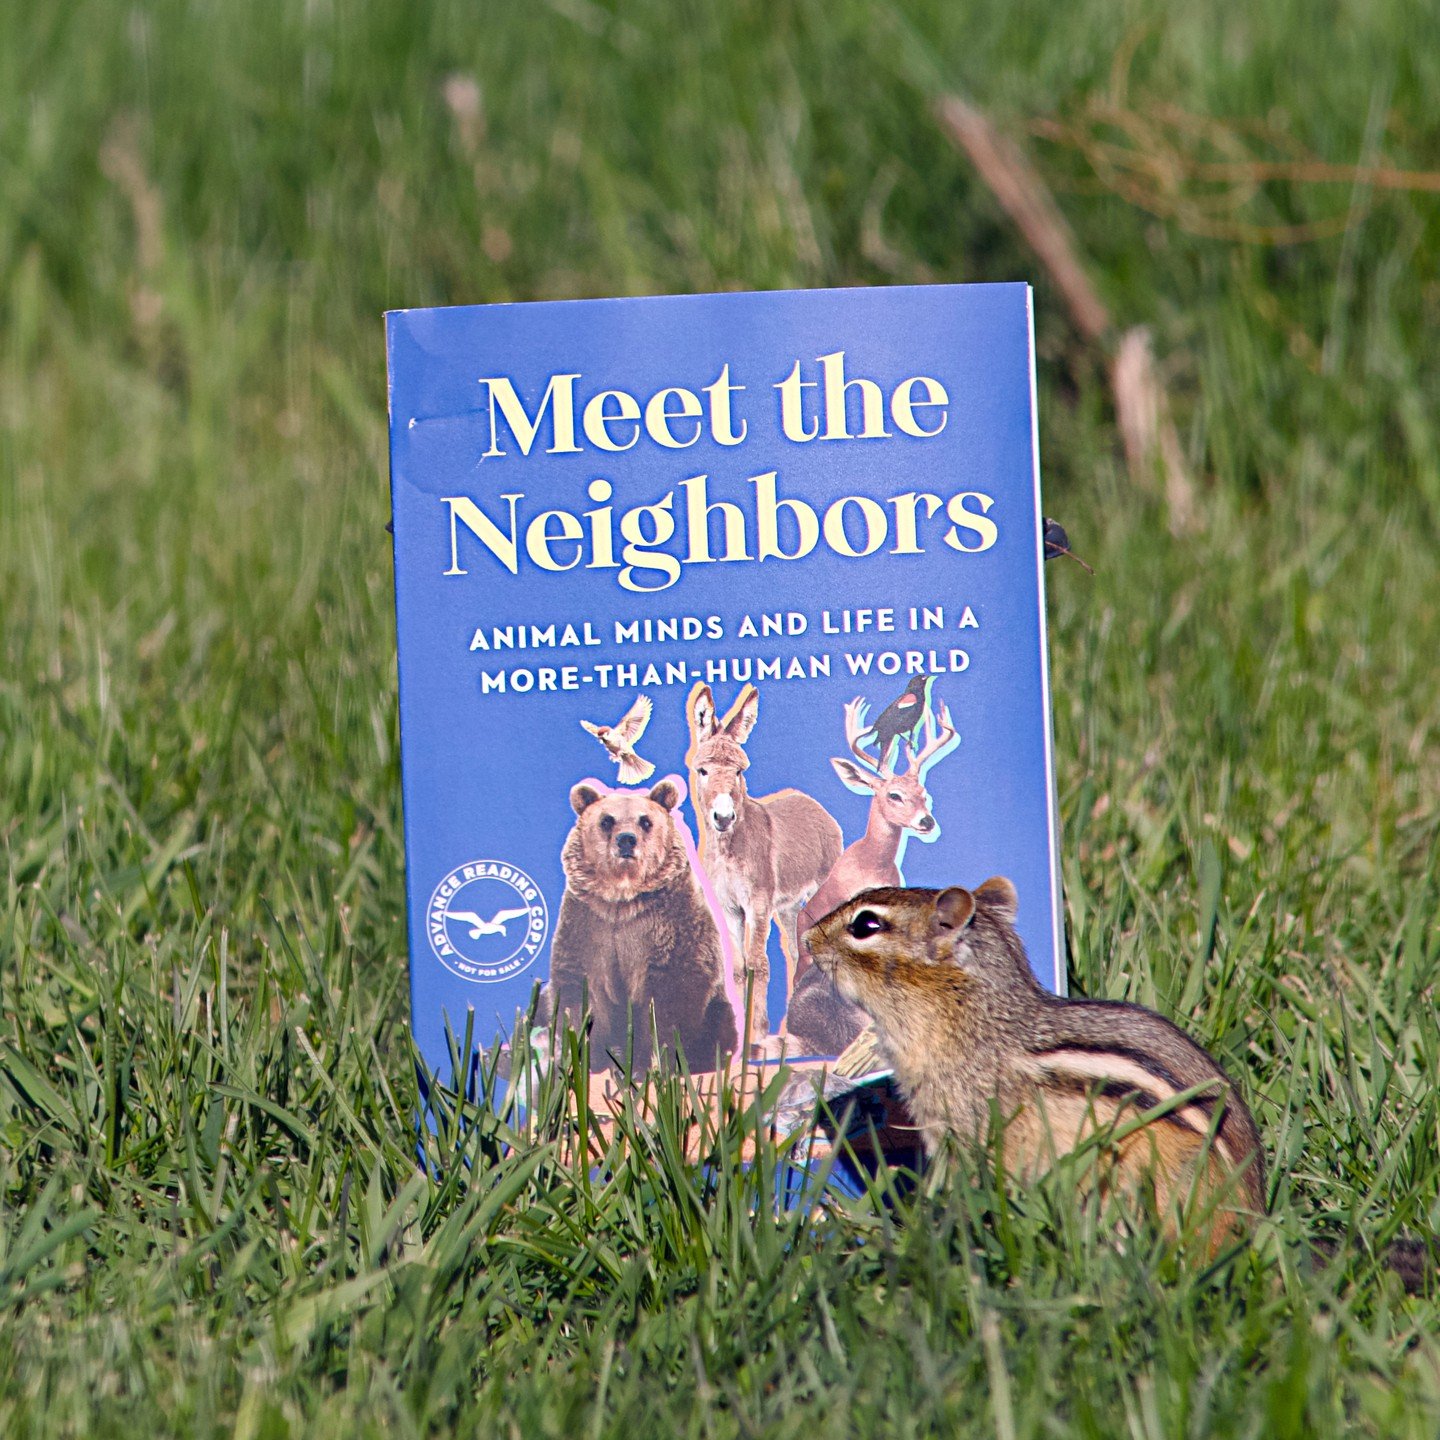 Blew the publicity budget on chipmunk influencers
.
.
.
#chipmunksofinstagram #chipmunks #animals #nature #meettheneighbors #newbooks